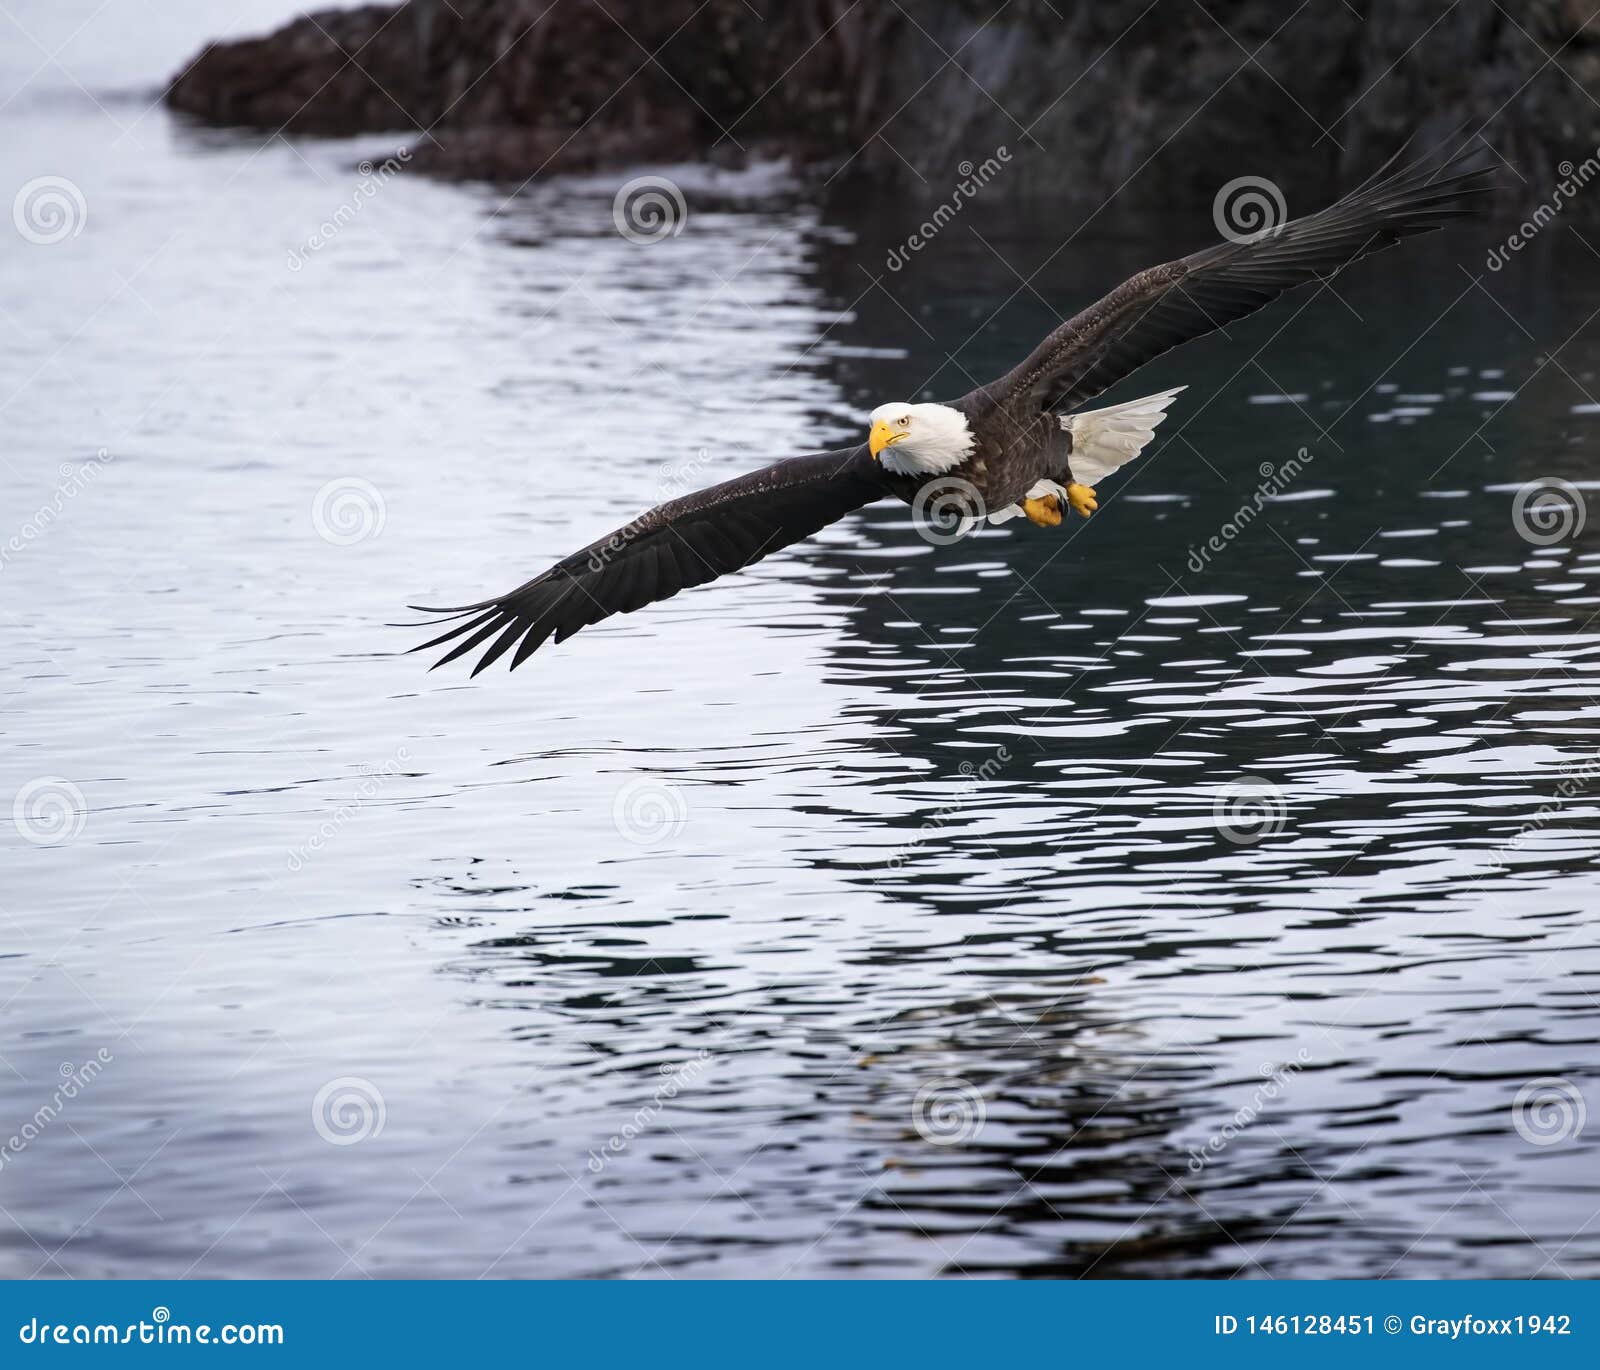 Opérations bancaires adultes d'Eagle chauve au-dessus de baie de Katchemak. Eagle chauve volant bas au-dessus de la baie de Katchemak, recherchant le peu des harengs jetés en l'air par le capitaine de bateau